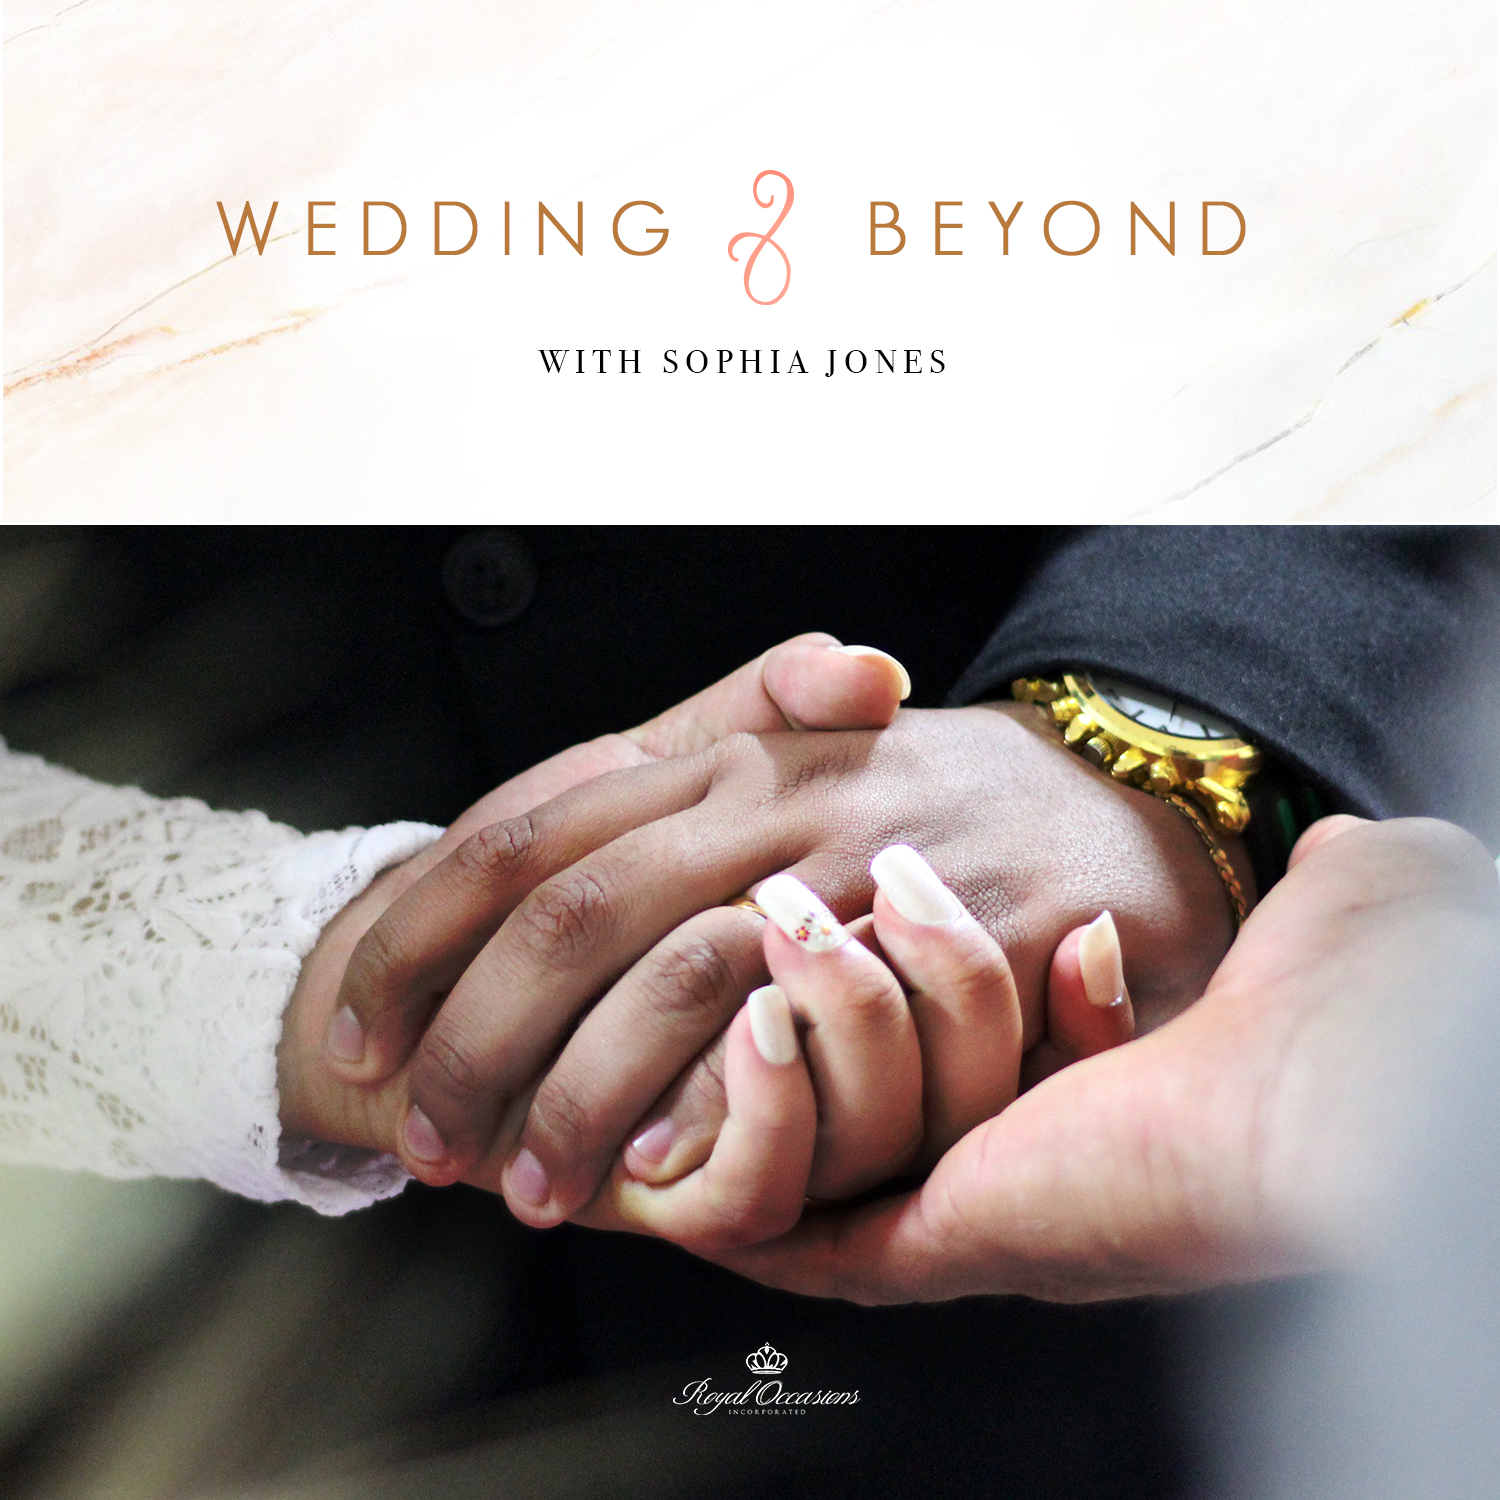 Wedding & Beyond with Sophia Jones